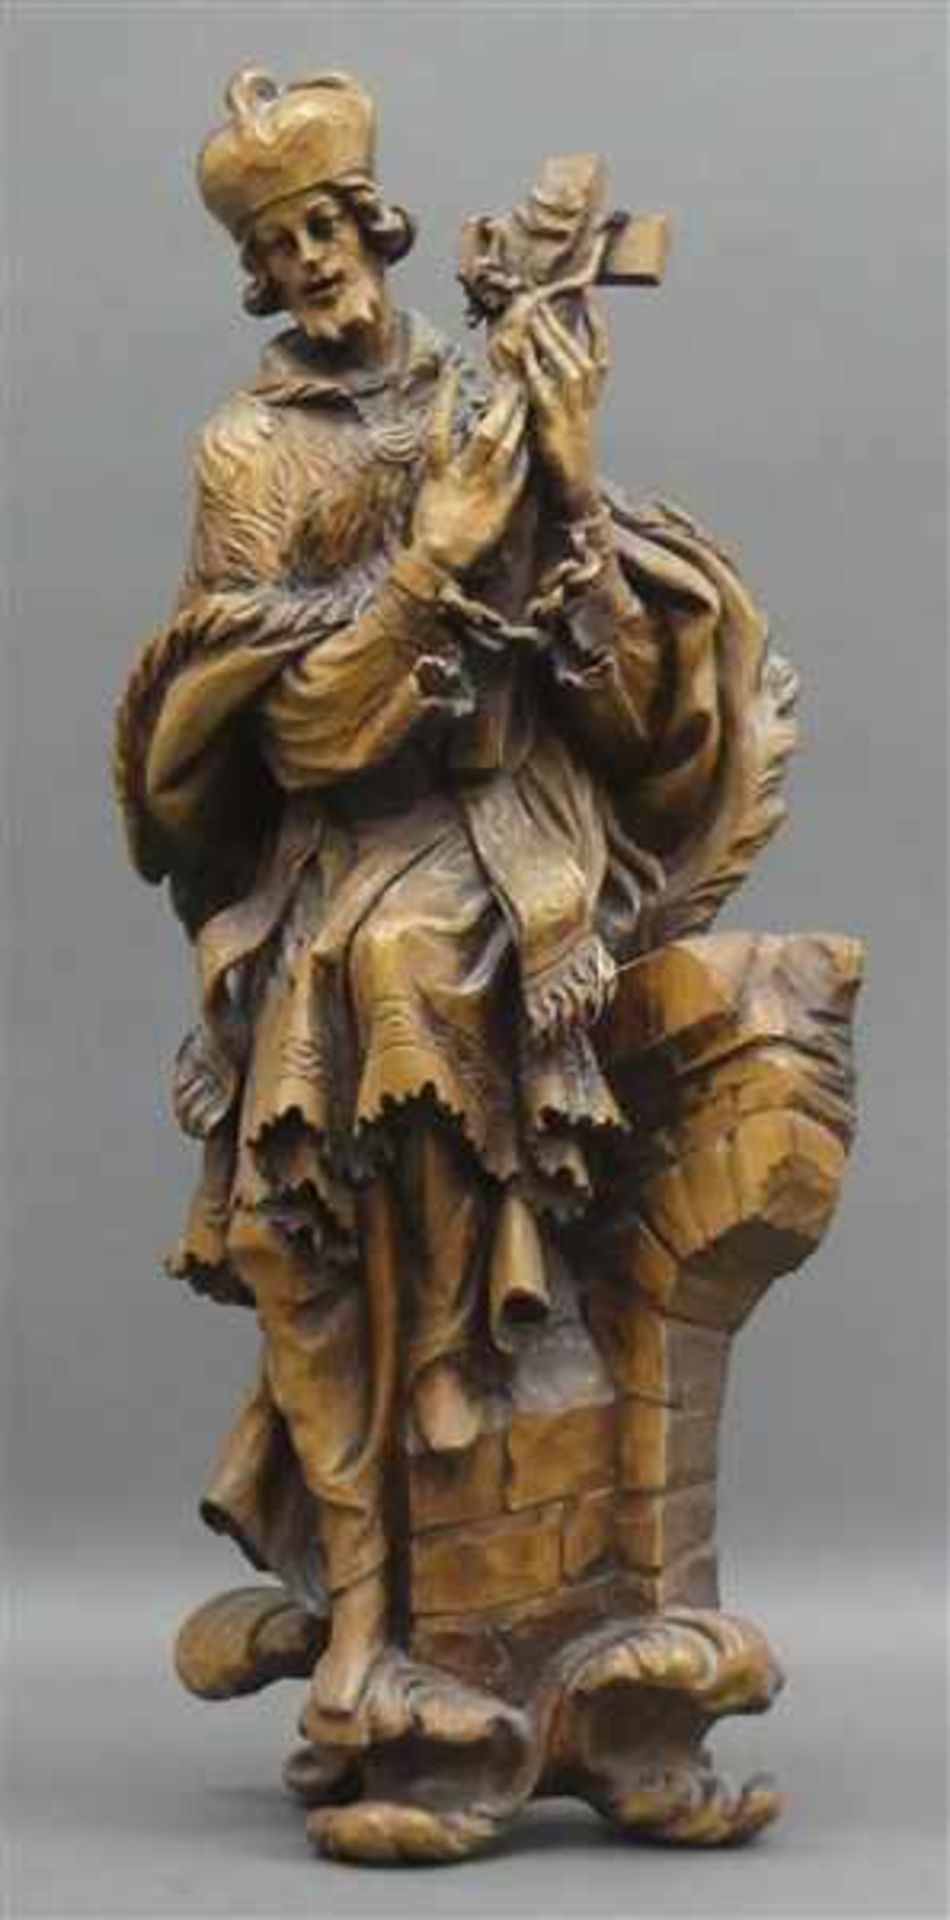 Holzskulptur Darstellung des Heiligen Nepomuk, natur, Mitte 20. Jh., h 62 cm,- - -20.00 % buyer's